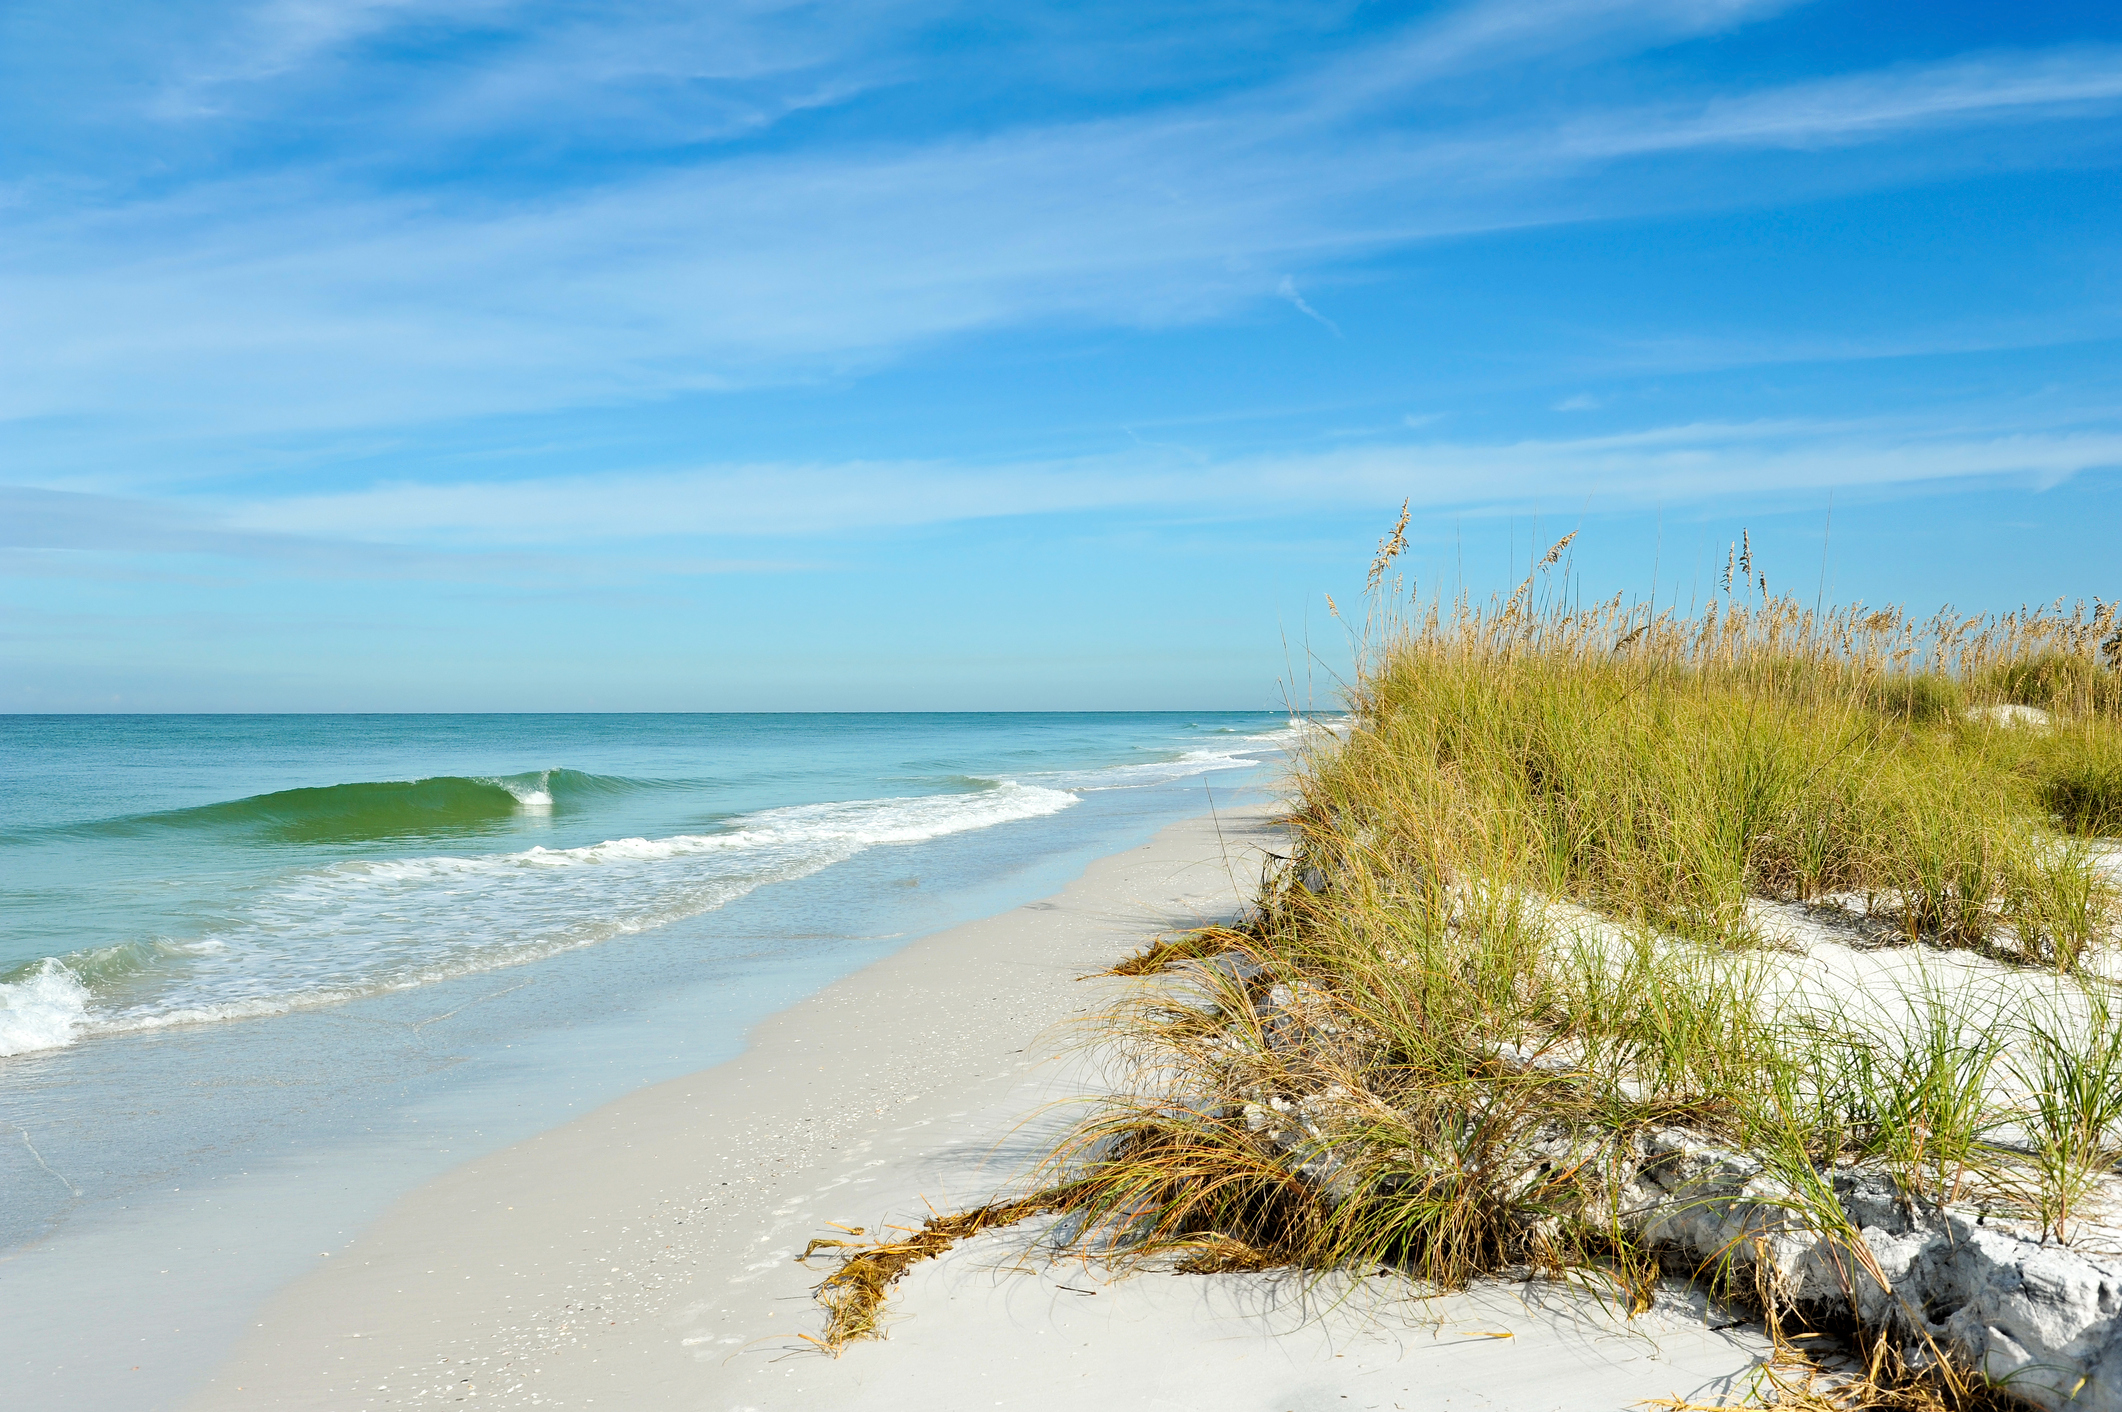 Beautiful Sand Dunes and Sea Oats on the Coastline of Anna Maria Island, Florida